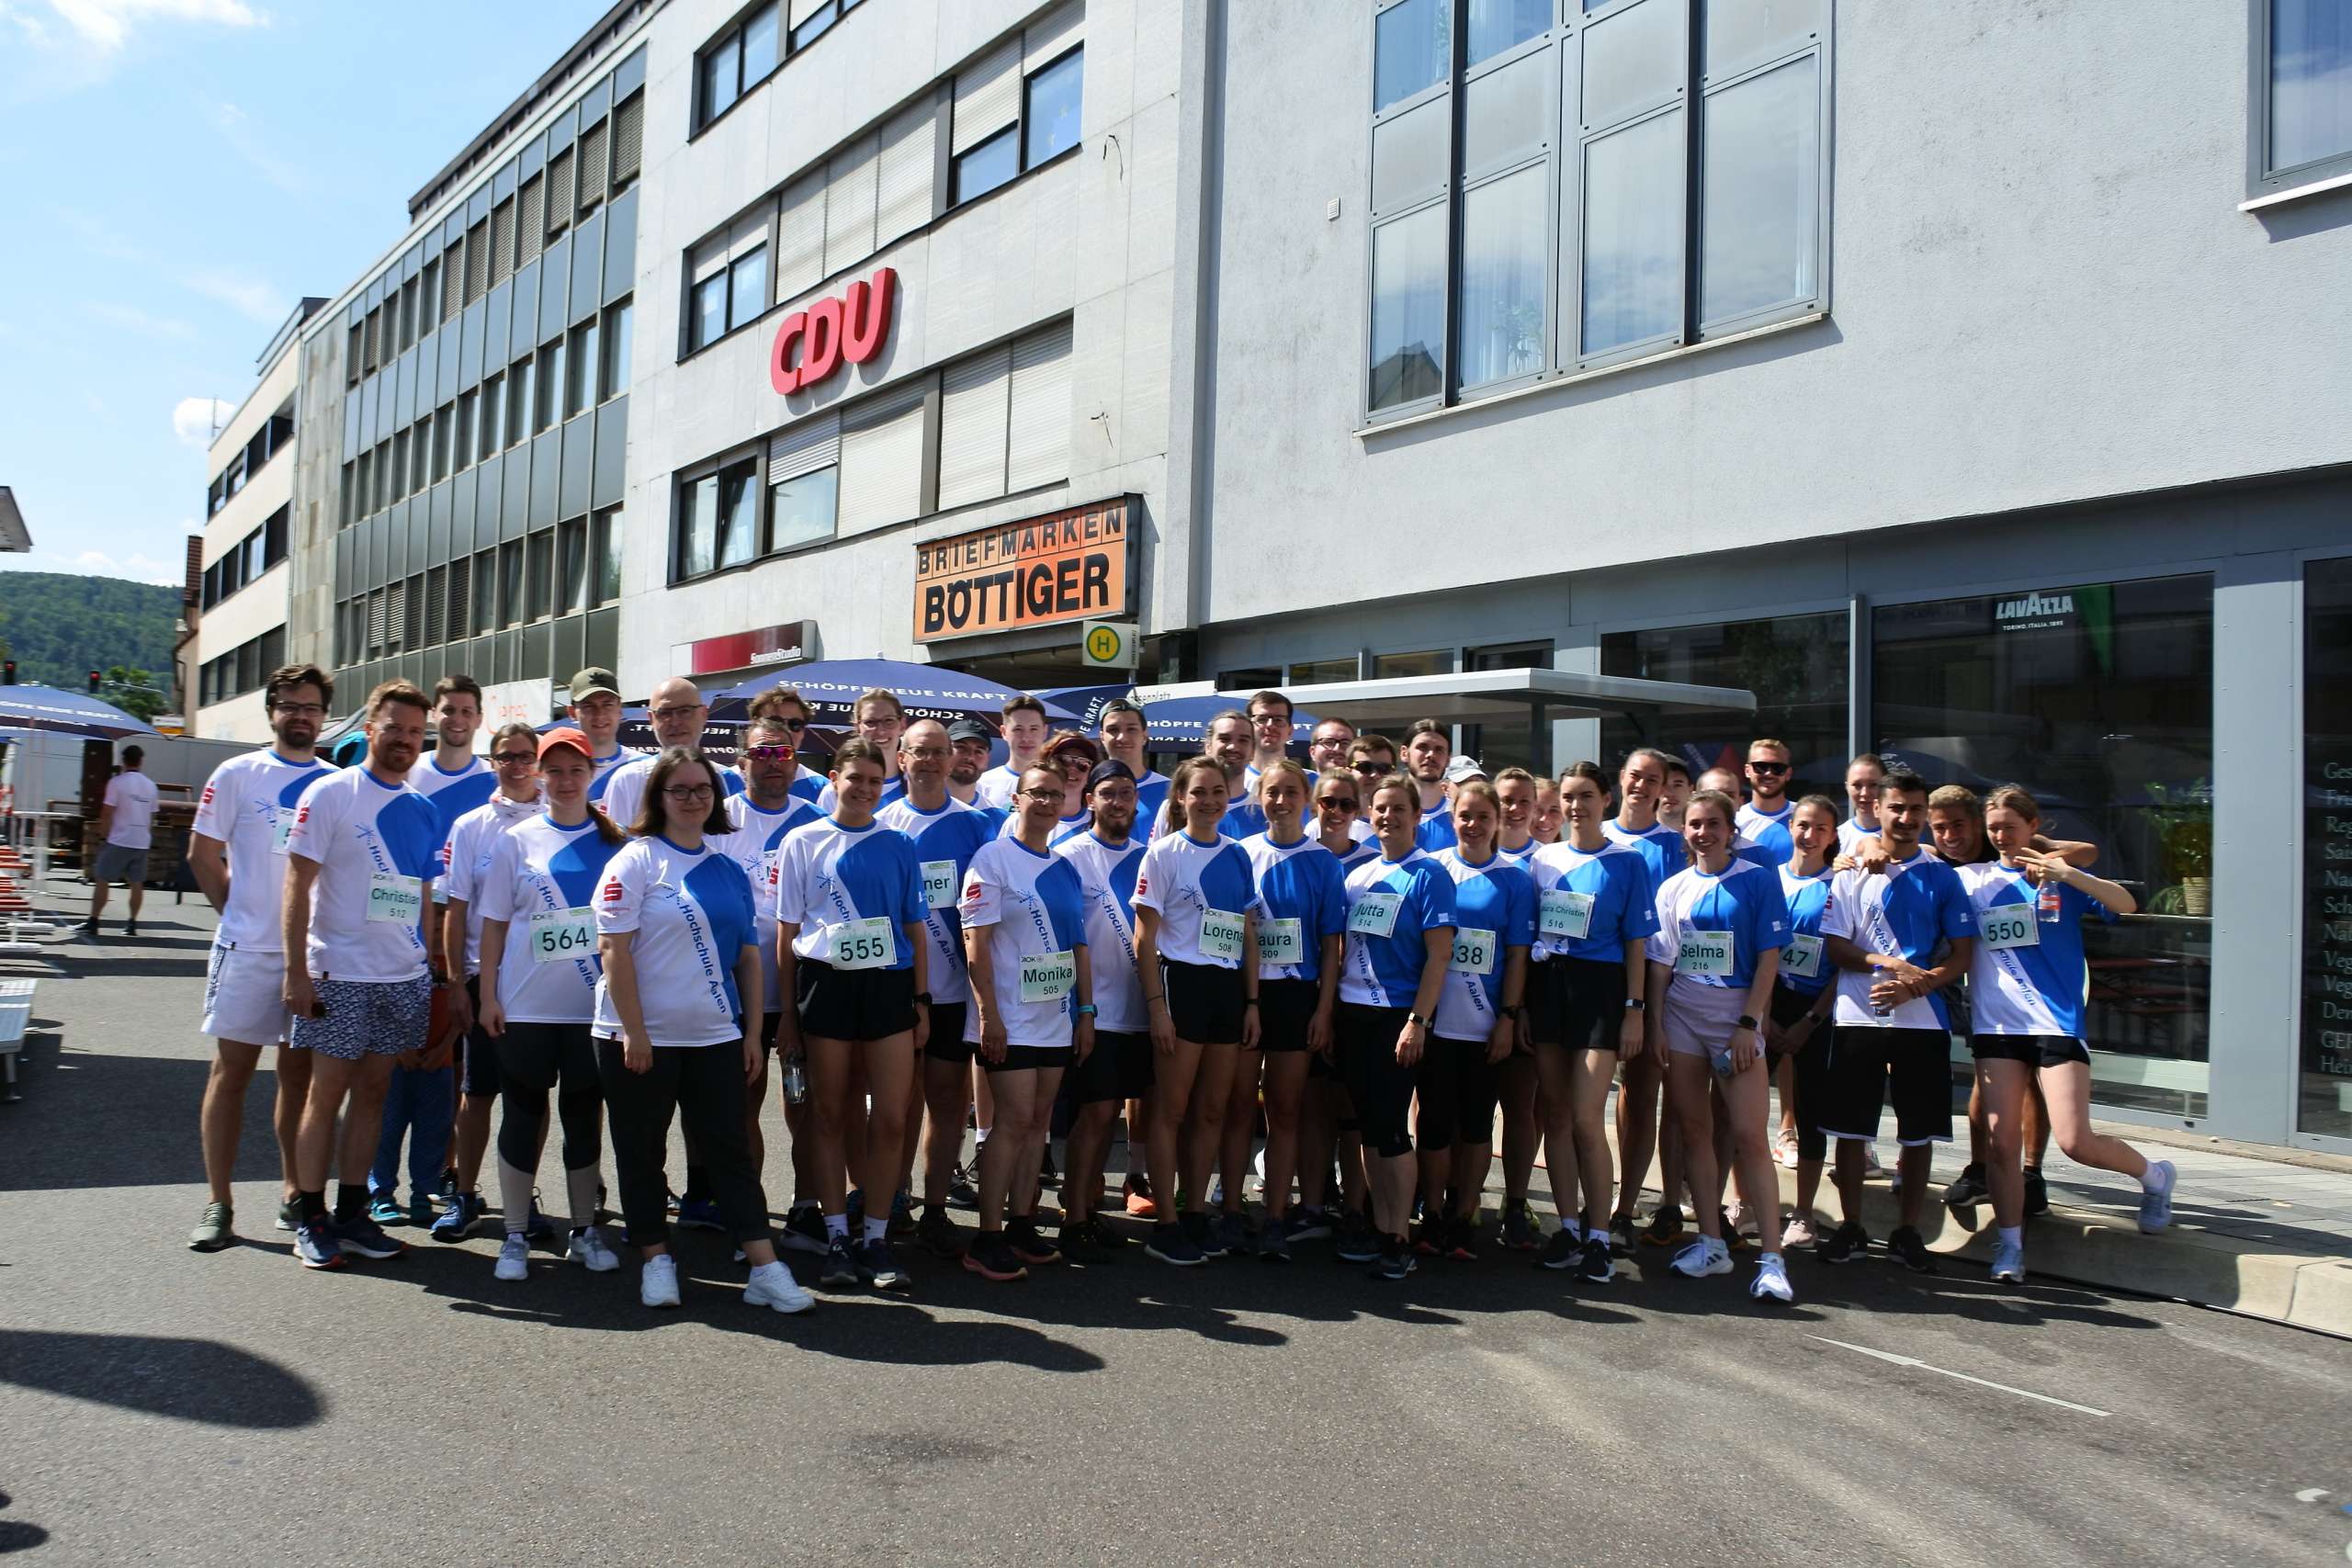 Ca 40 Athlet*innen mit blau-weißen Laufshirts von DOWE Sportswear stehen posierend auf einem Platz. Es ist sonnig.